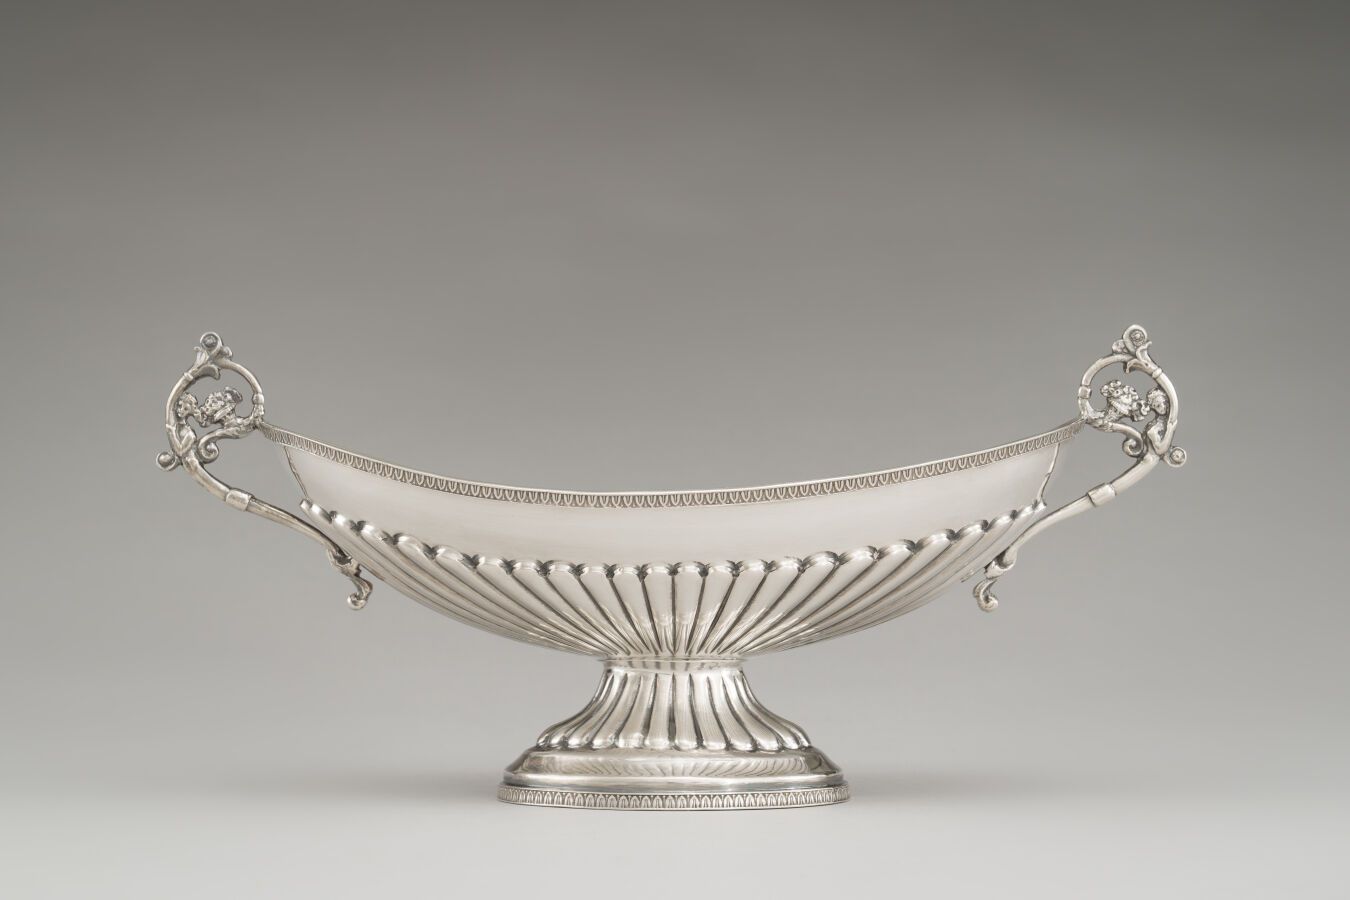 Null 银质（800/1000）杯，底座上有加德隆装饰。手柄上有叶子和卷轴。

重量：535克。

意大利，20世纪。 

高：14厘米 长：33厘米